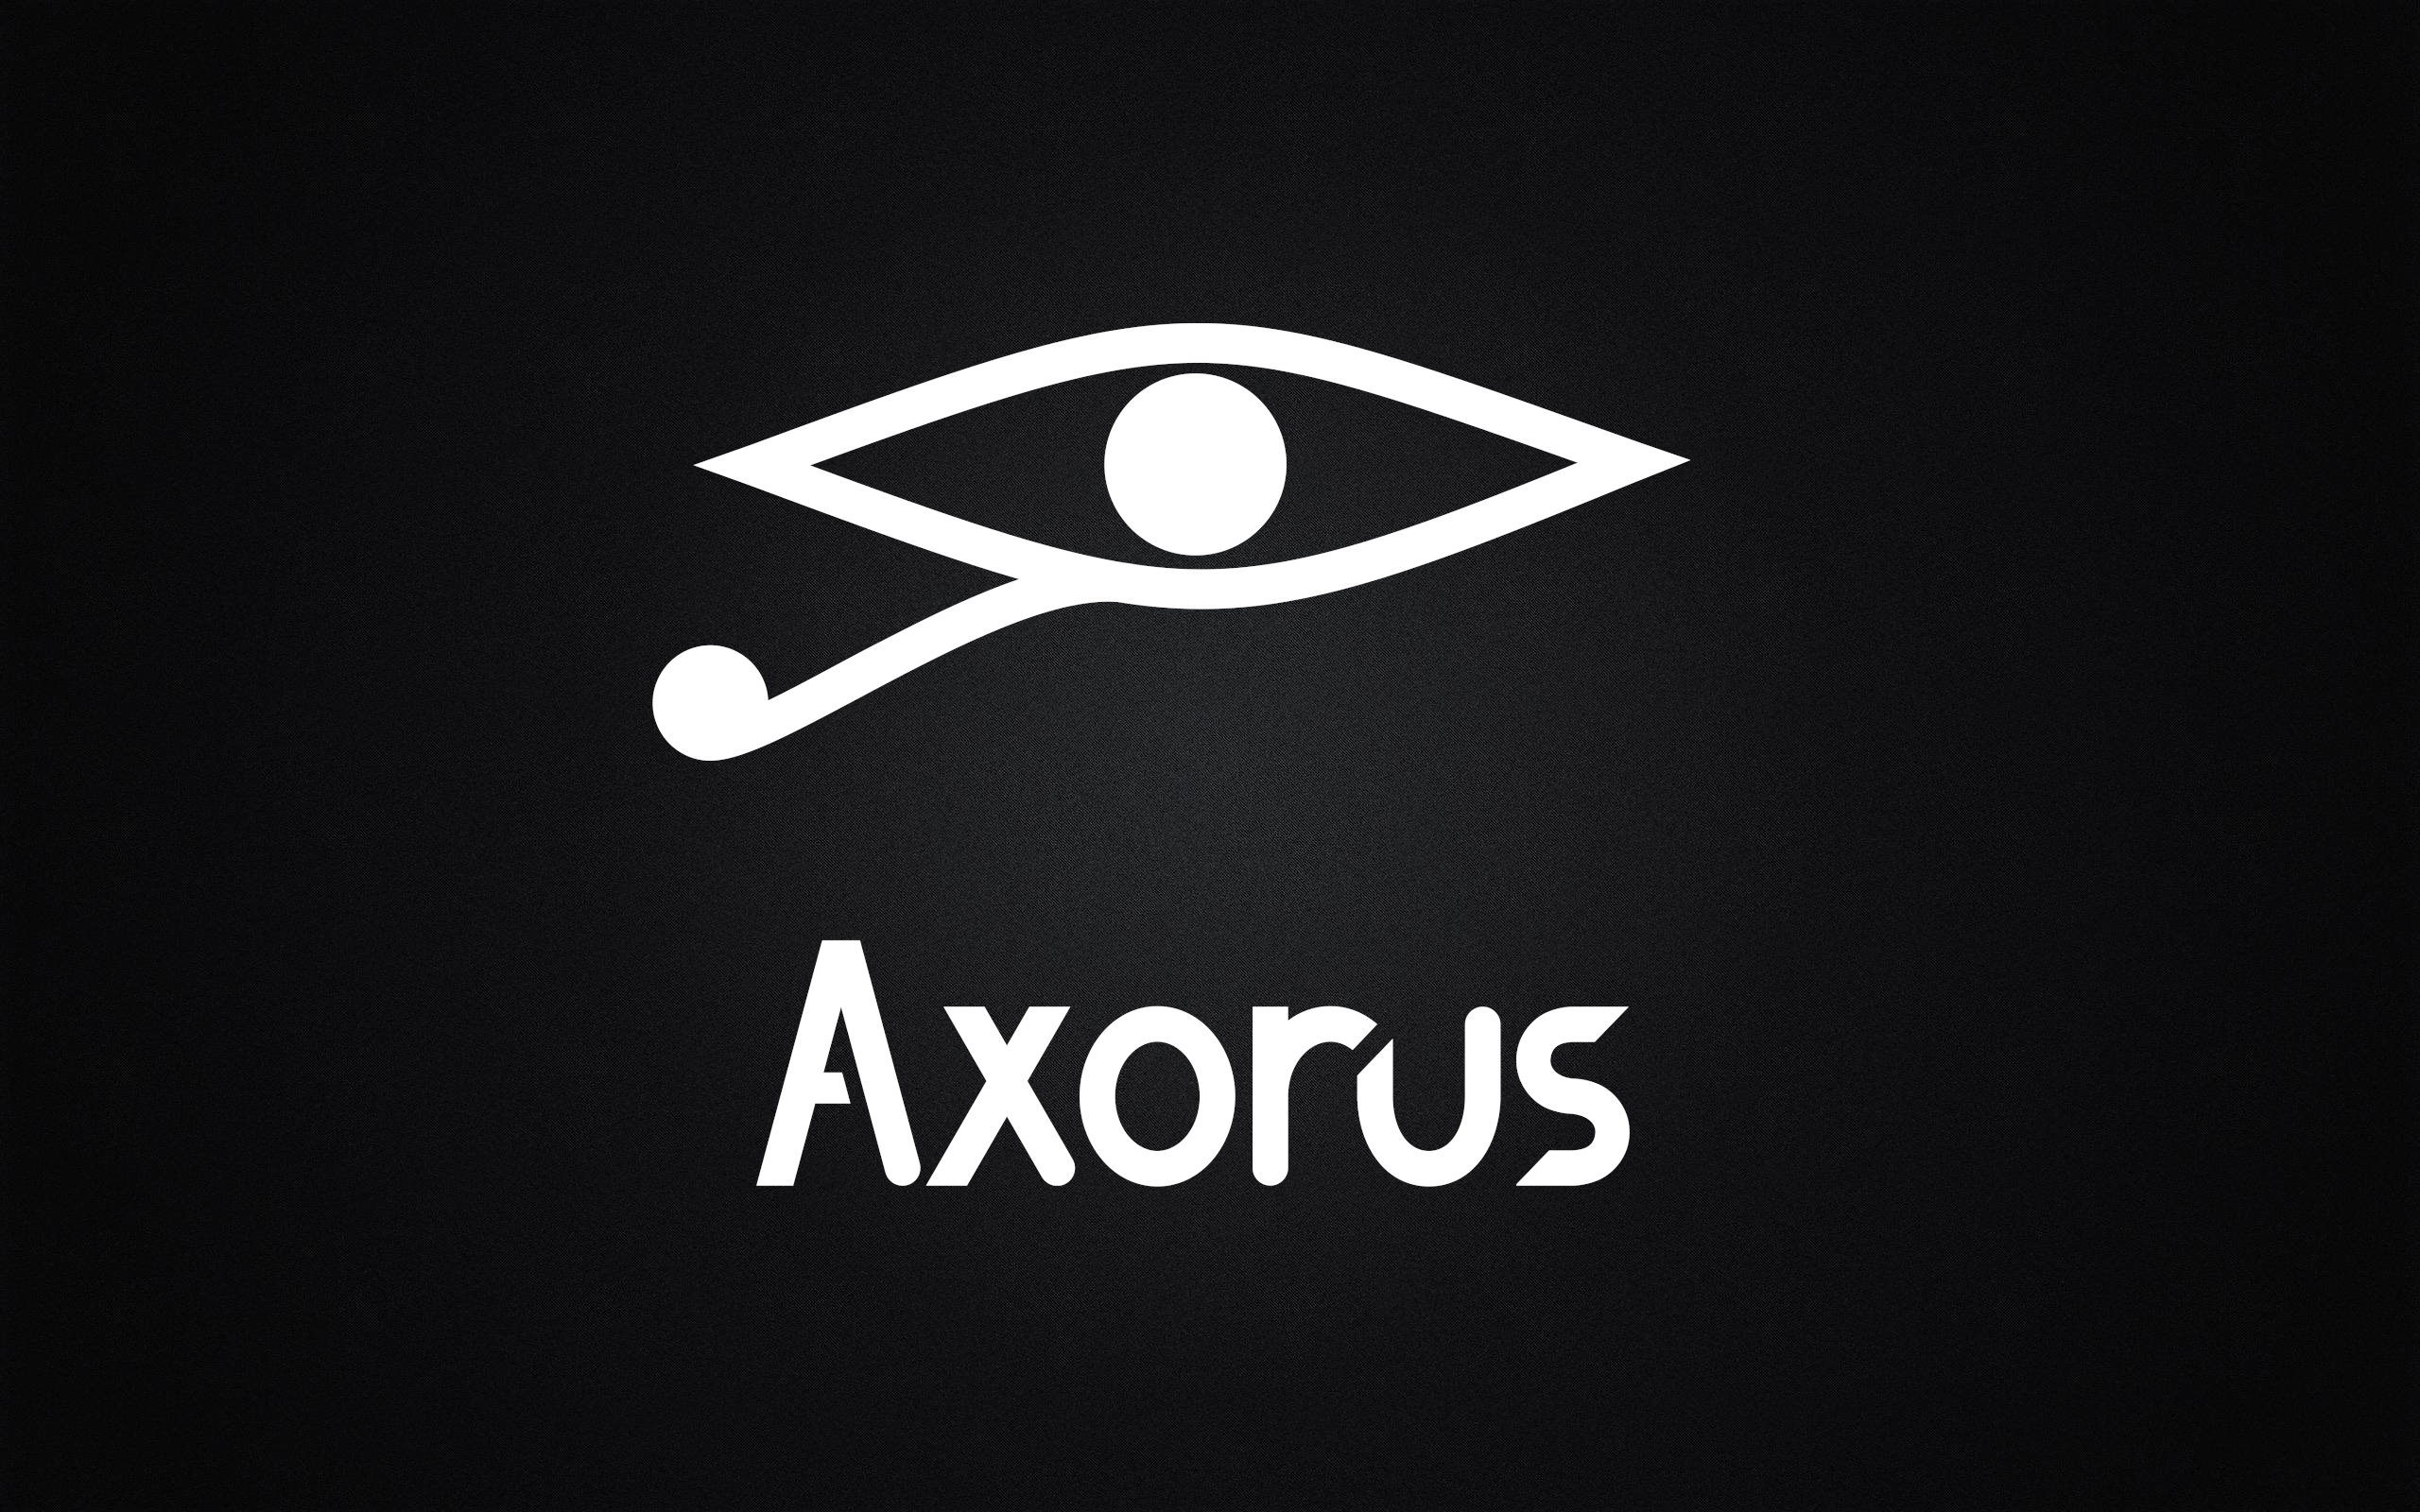 Axorus